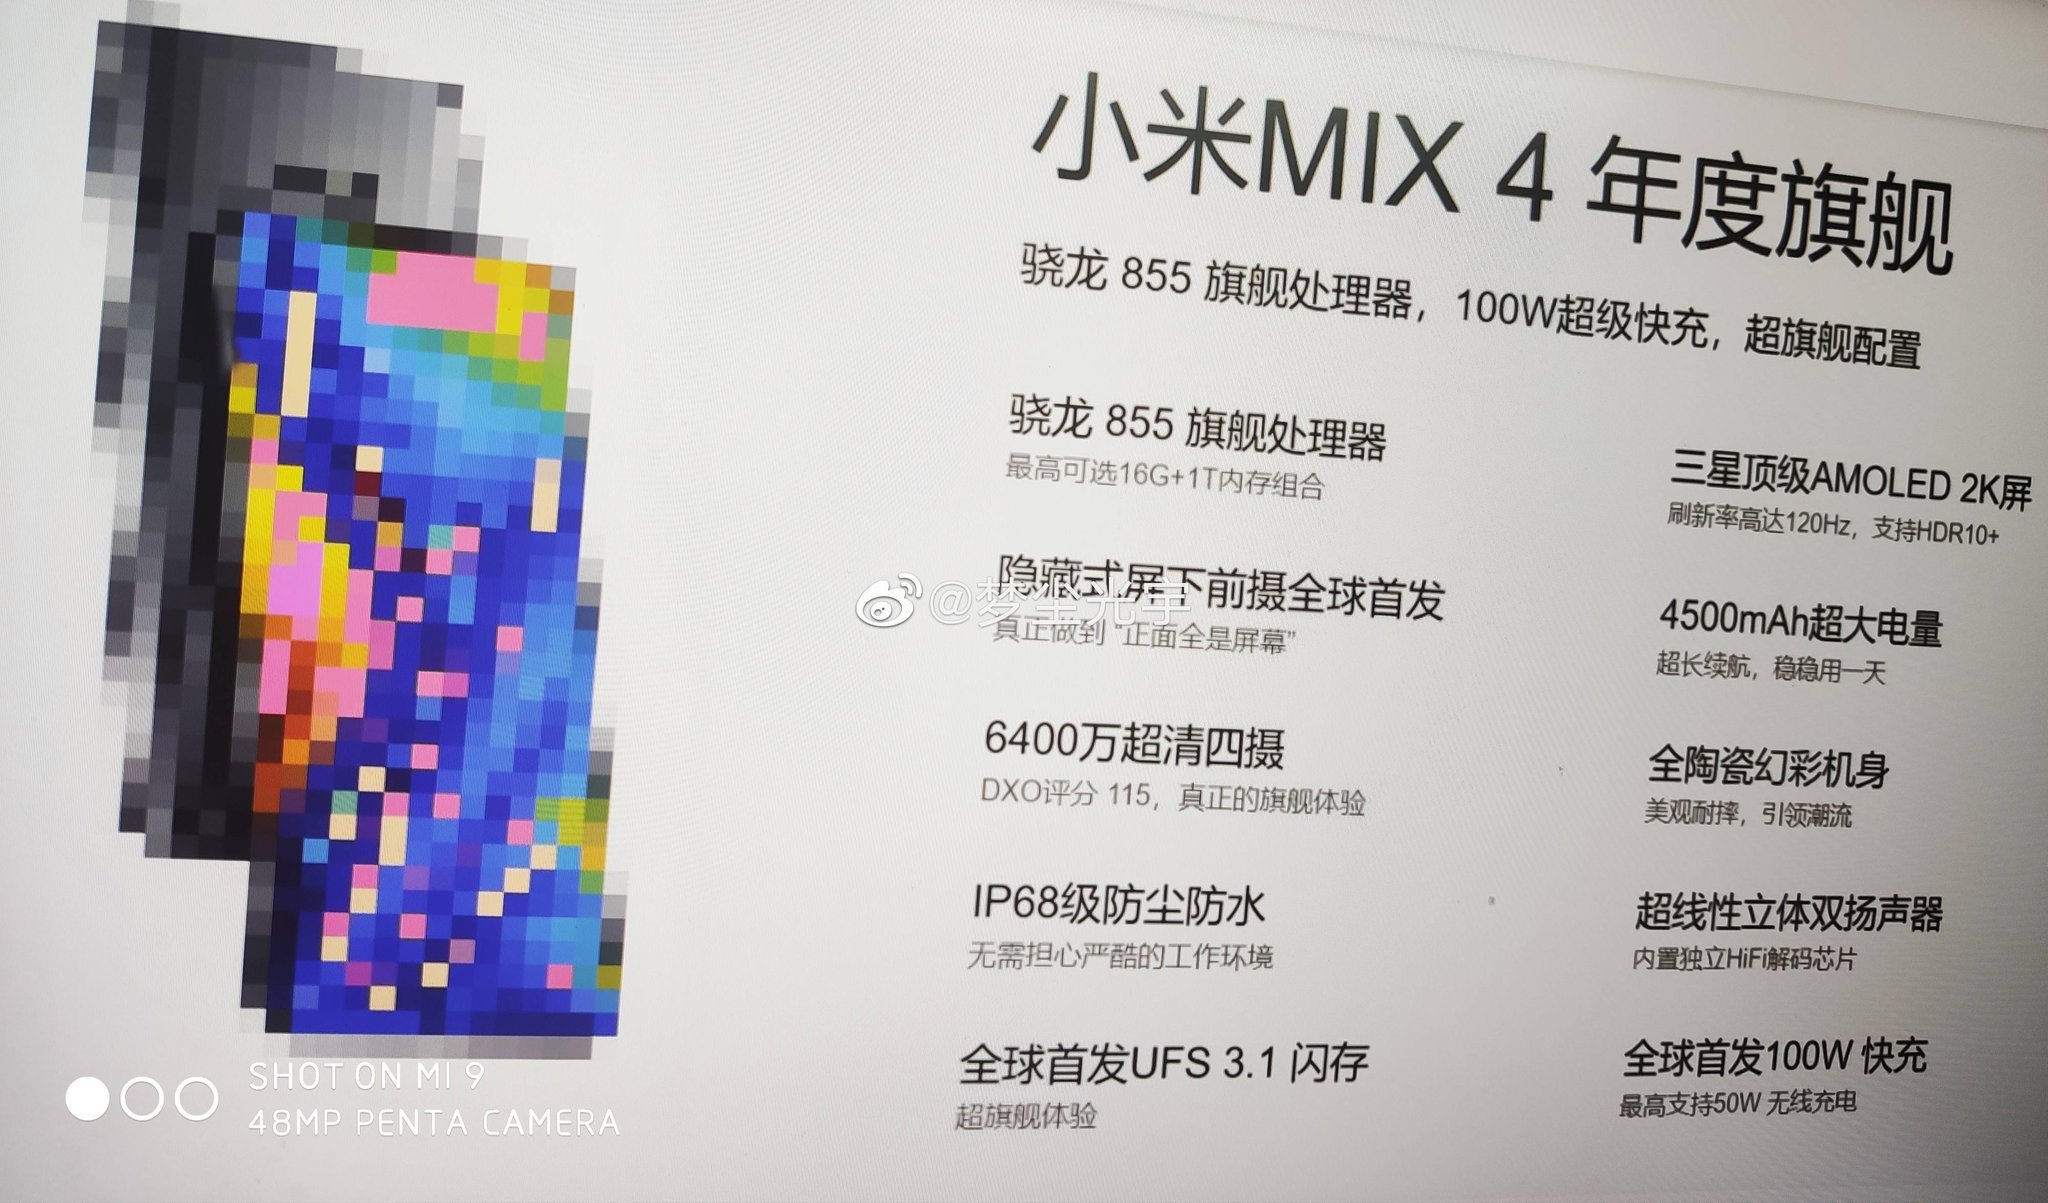 Xiaomi Mi Mix 4 specyfikacja techniczna kiedy premiera plotki przecieki wycieki opinie